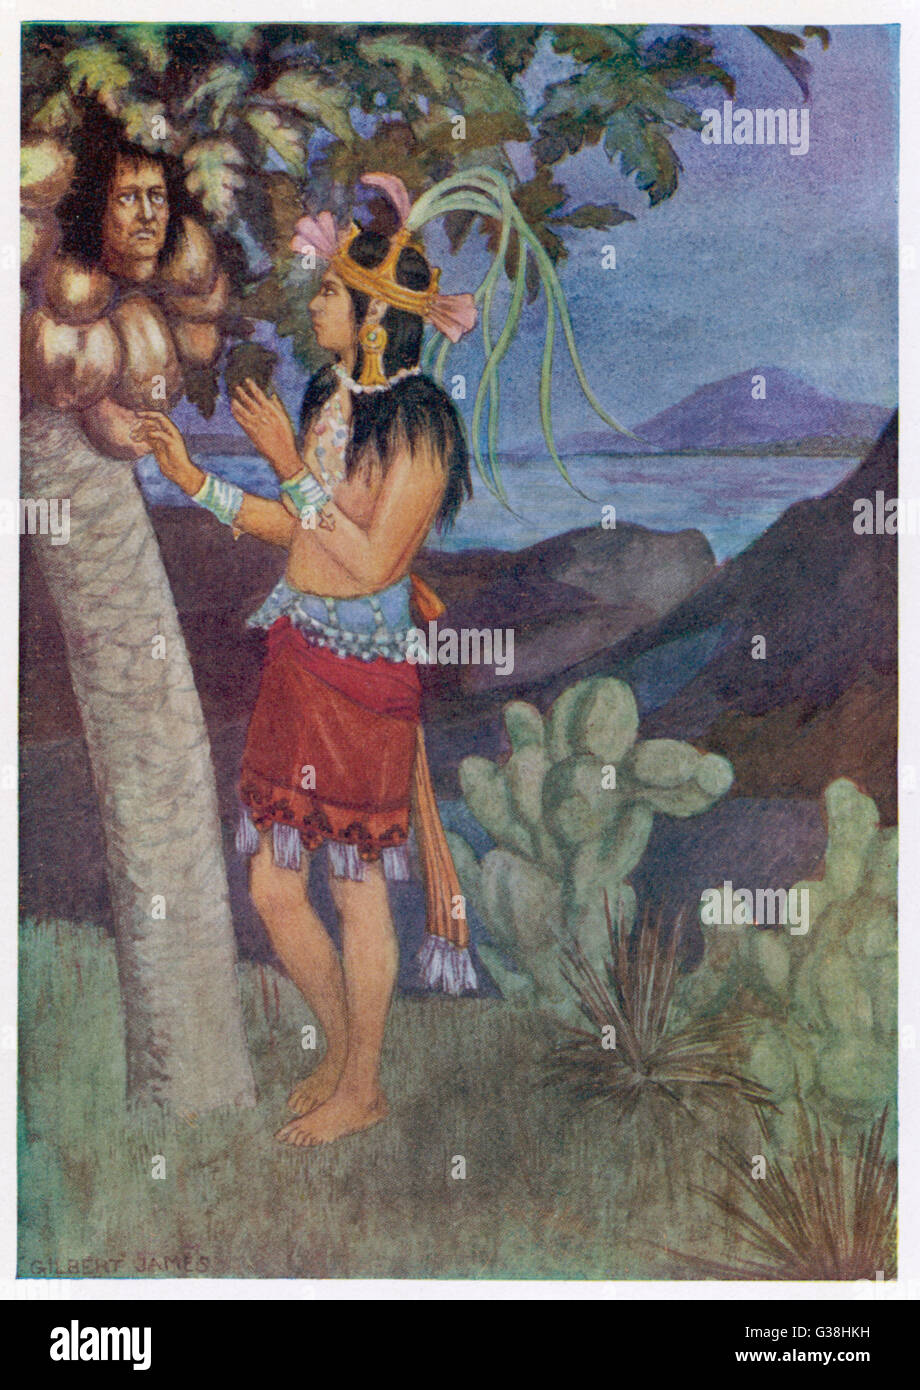 'Popol Vuh', un ancien manuscrit maya. Xquiq Princess (Sang) choisit une gourde de l'arbre interdit. En fait, c'est le chef de l'Apu- Hunhun, qui imprègne sa. Banque D'Images